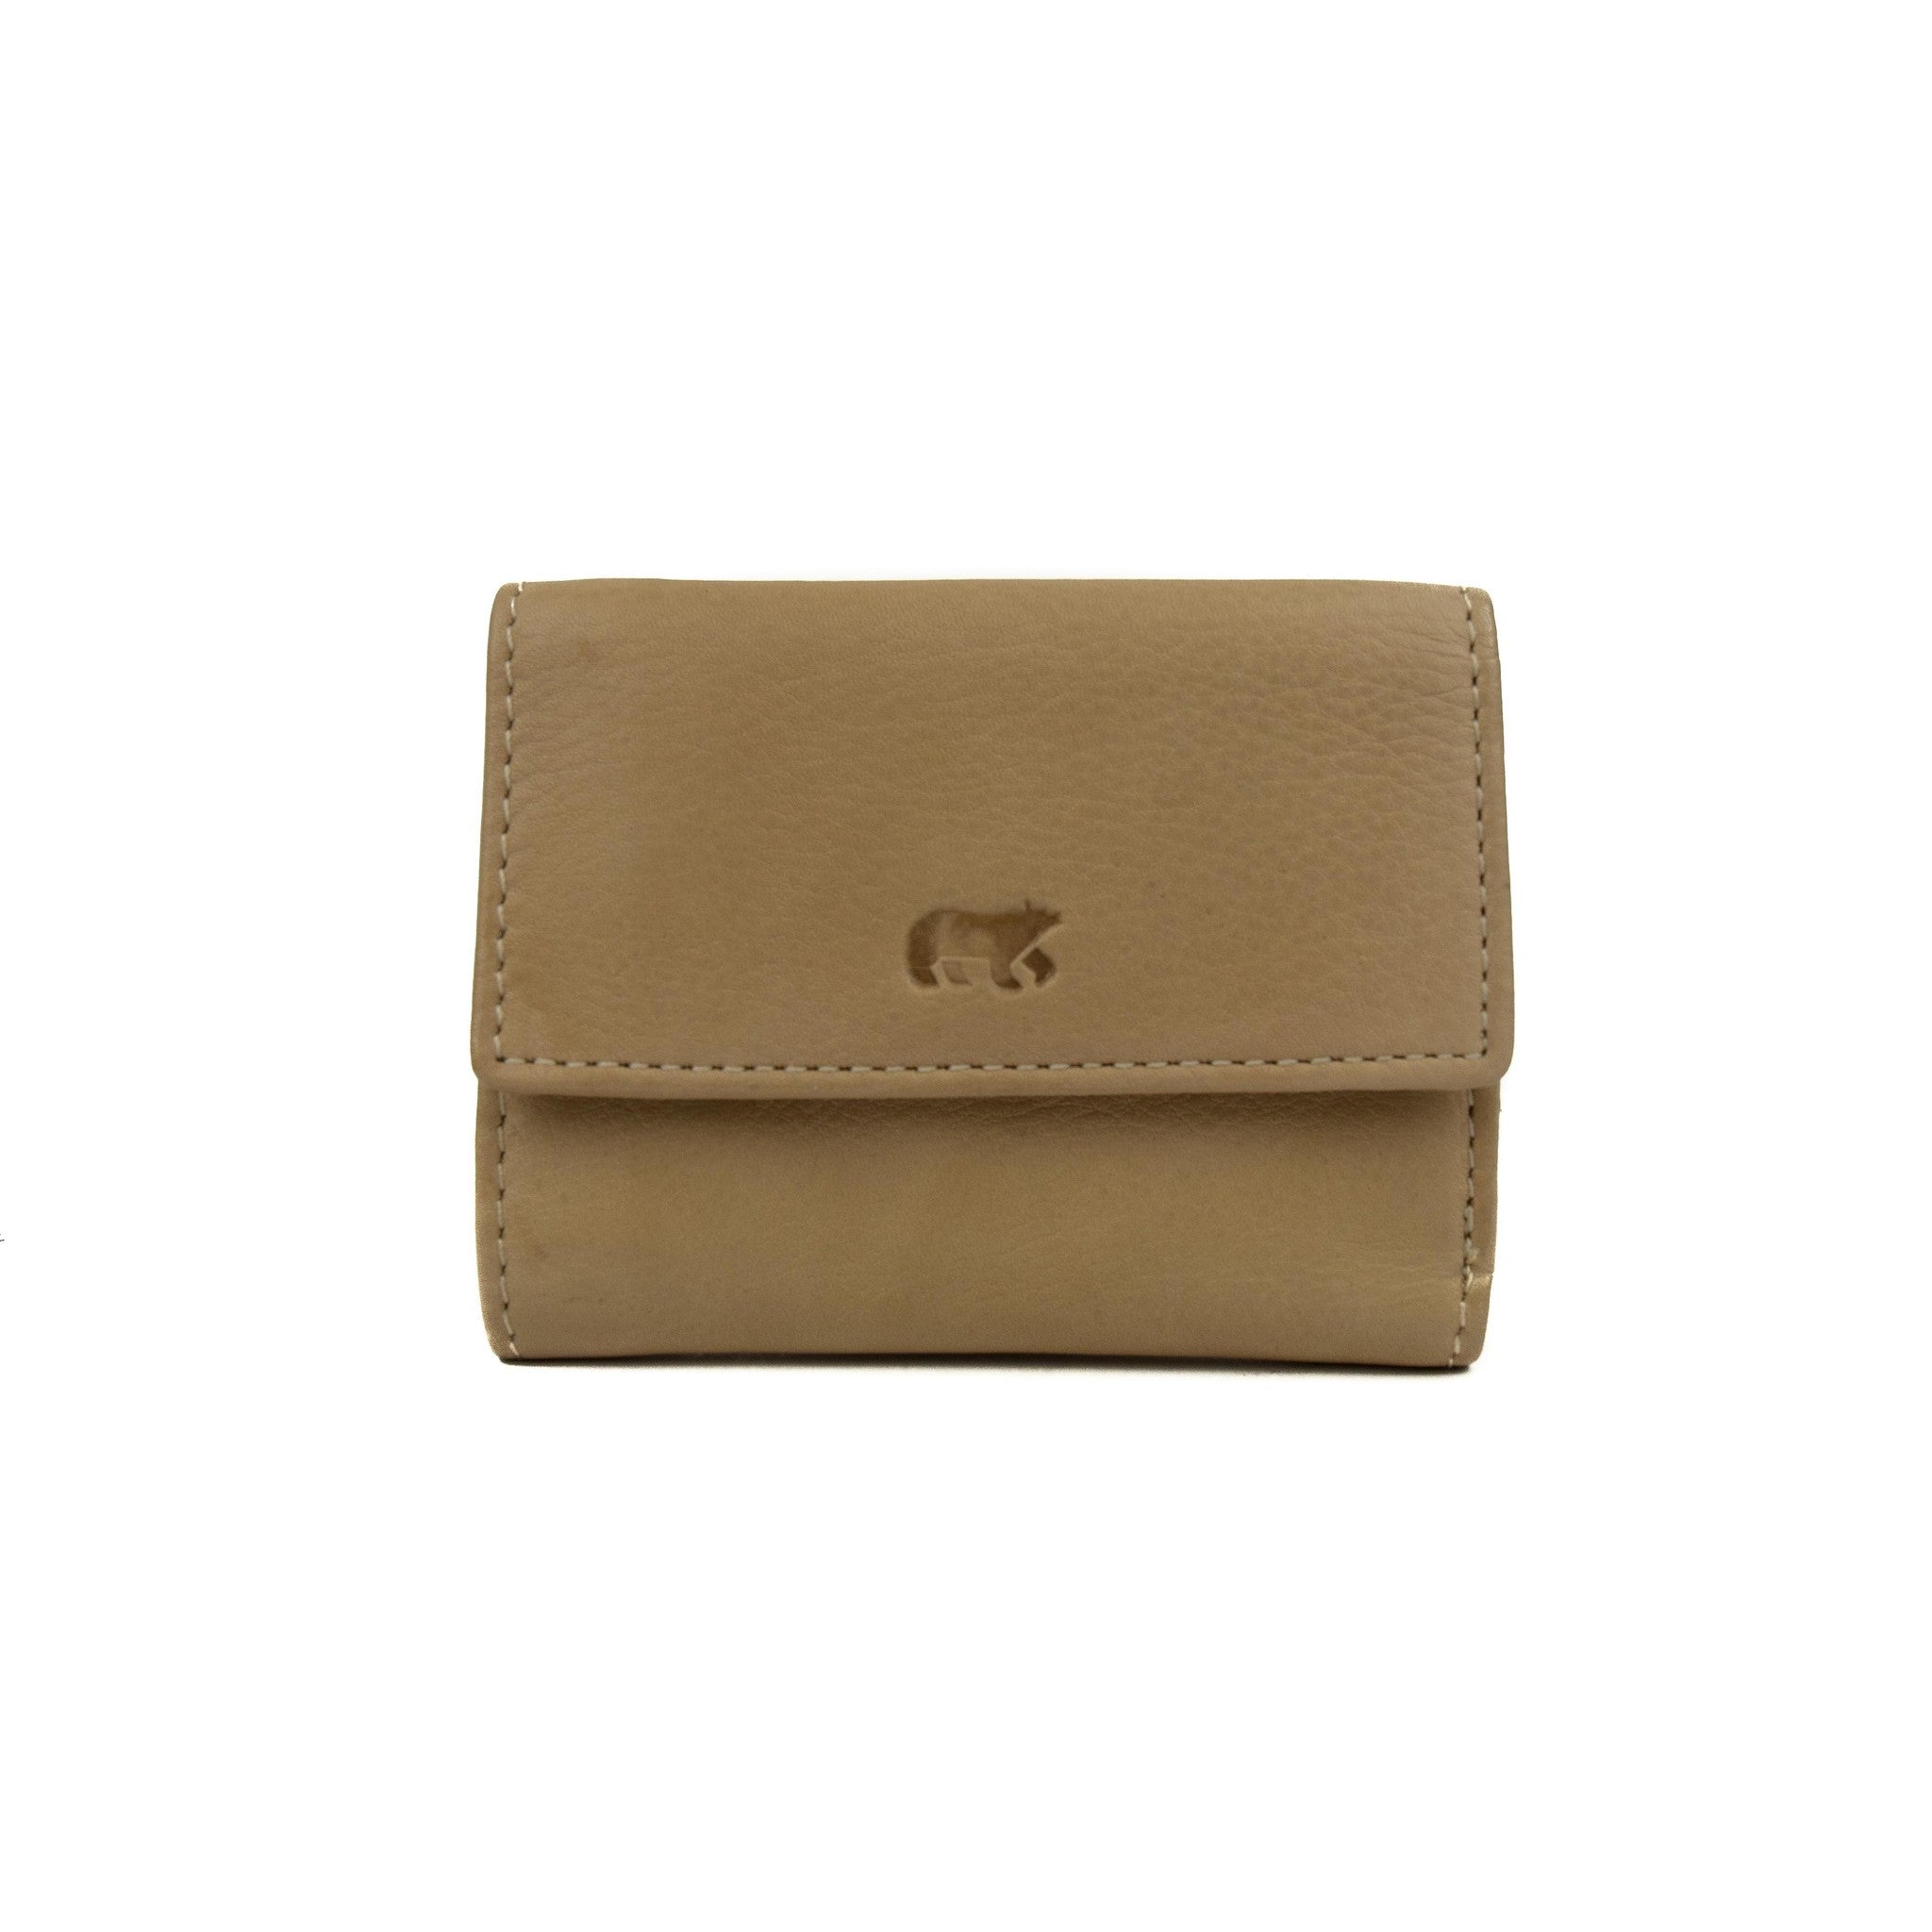 Wallet 'Jolie' beige - CL 14618